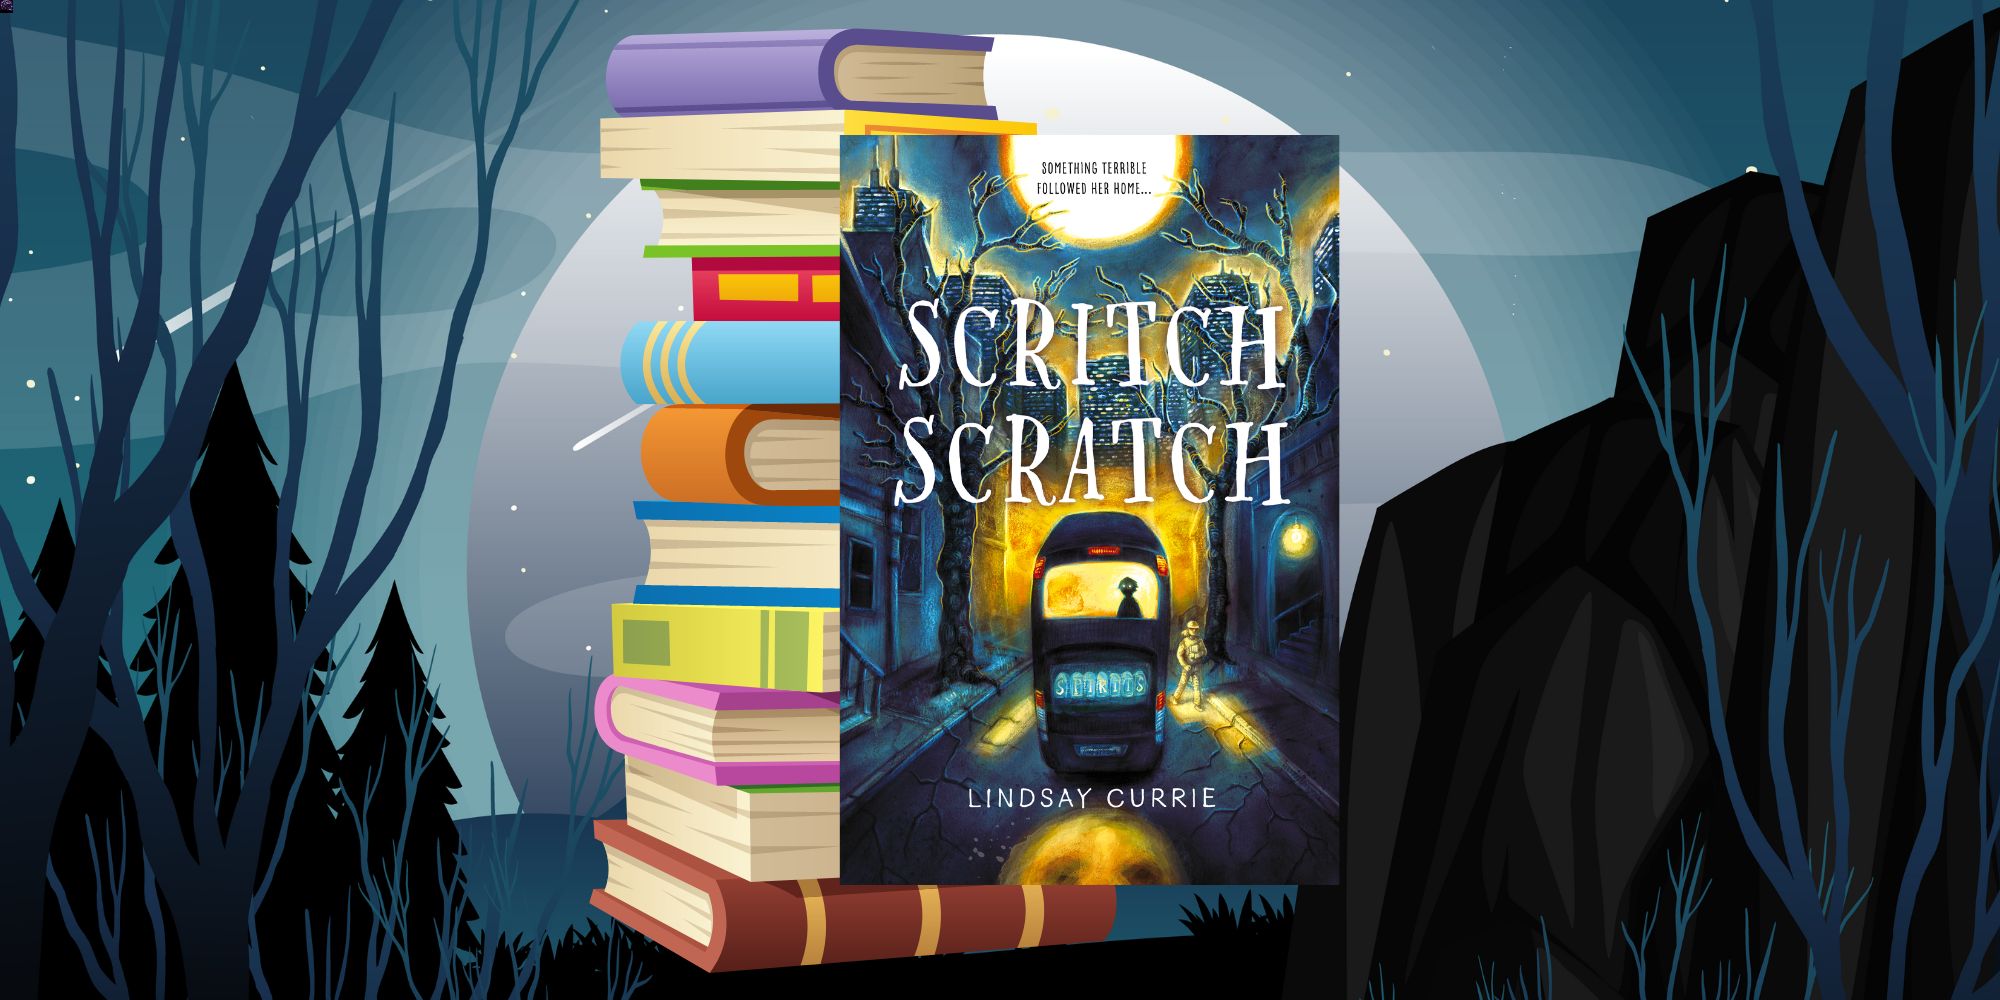 Scritch Scratch, Book Cover